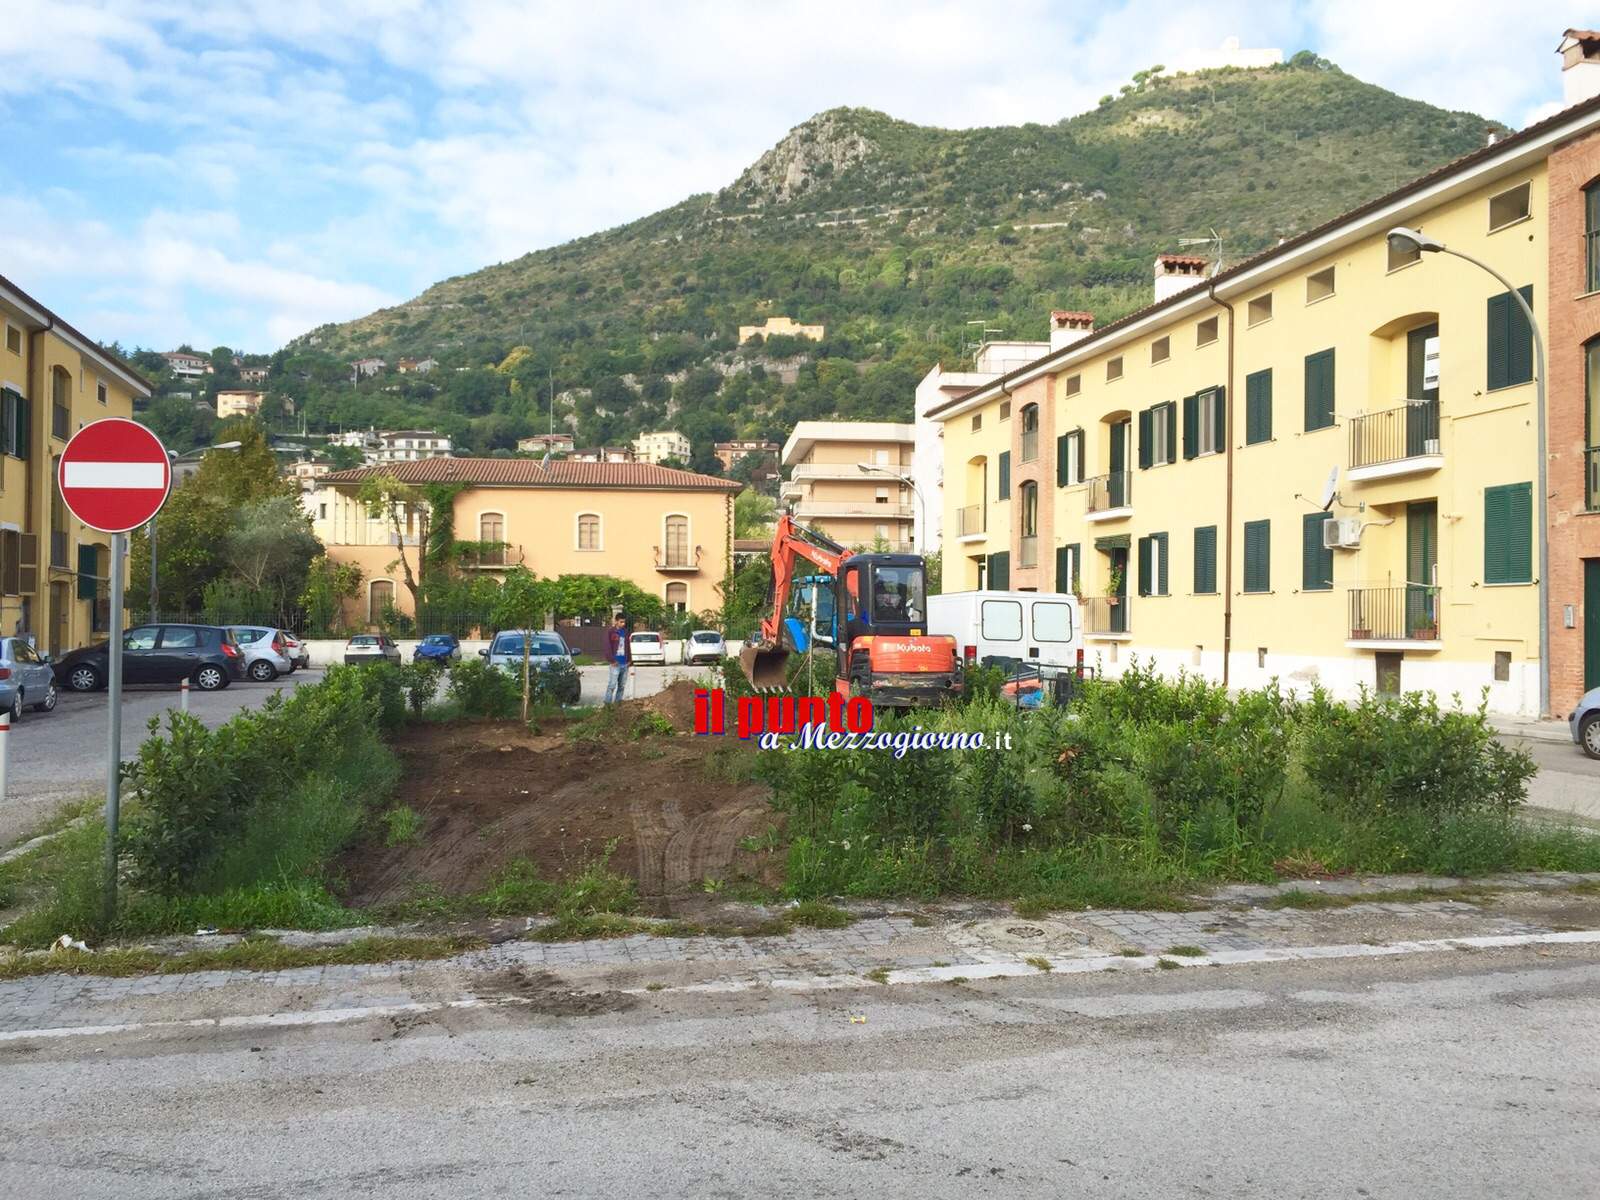 Cantiere “anonimo” in via Ariosto a Cassino non sfugge agli ambientalisti Grossi ed Avella